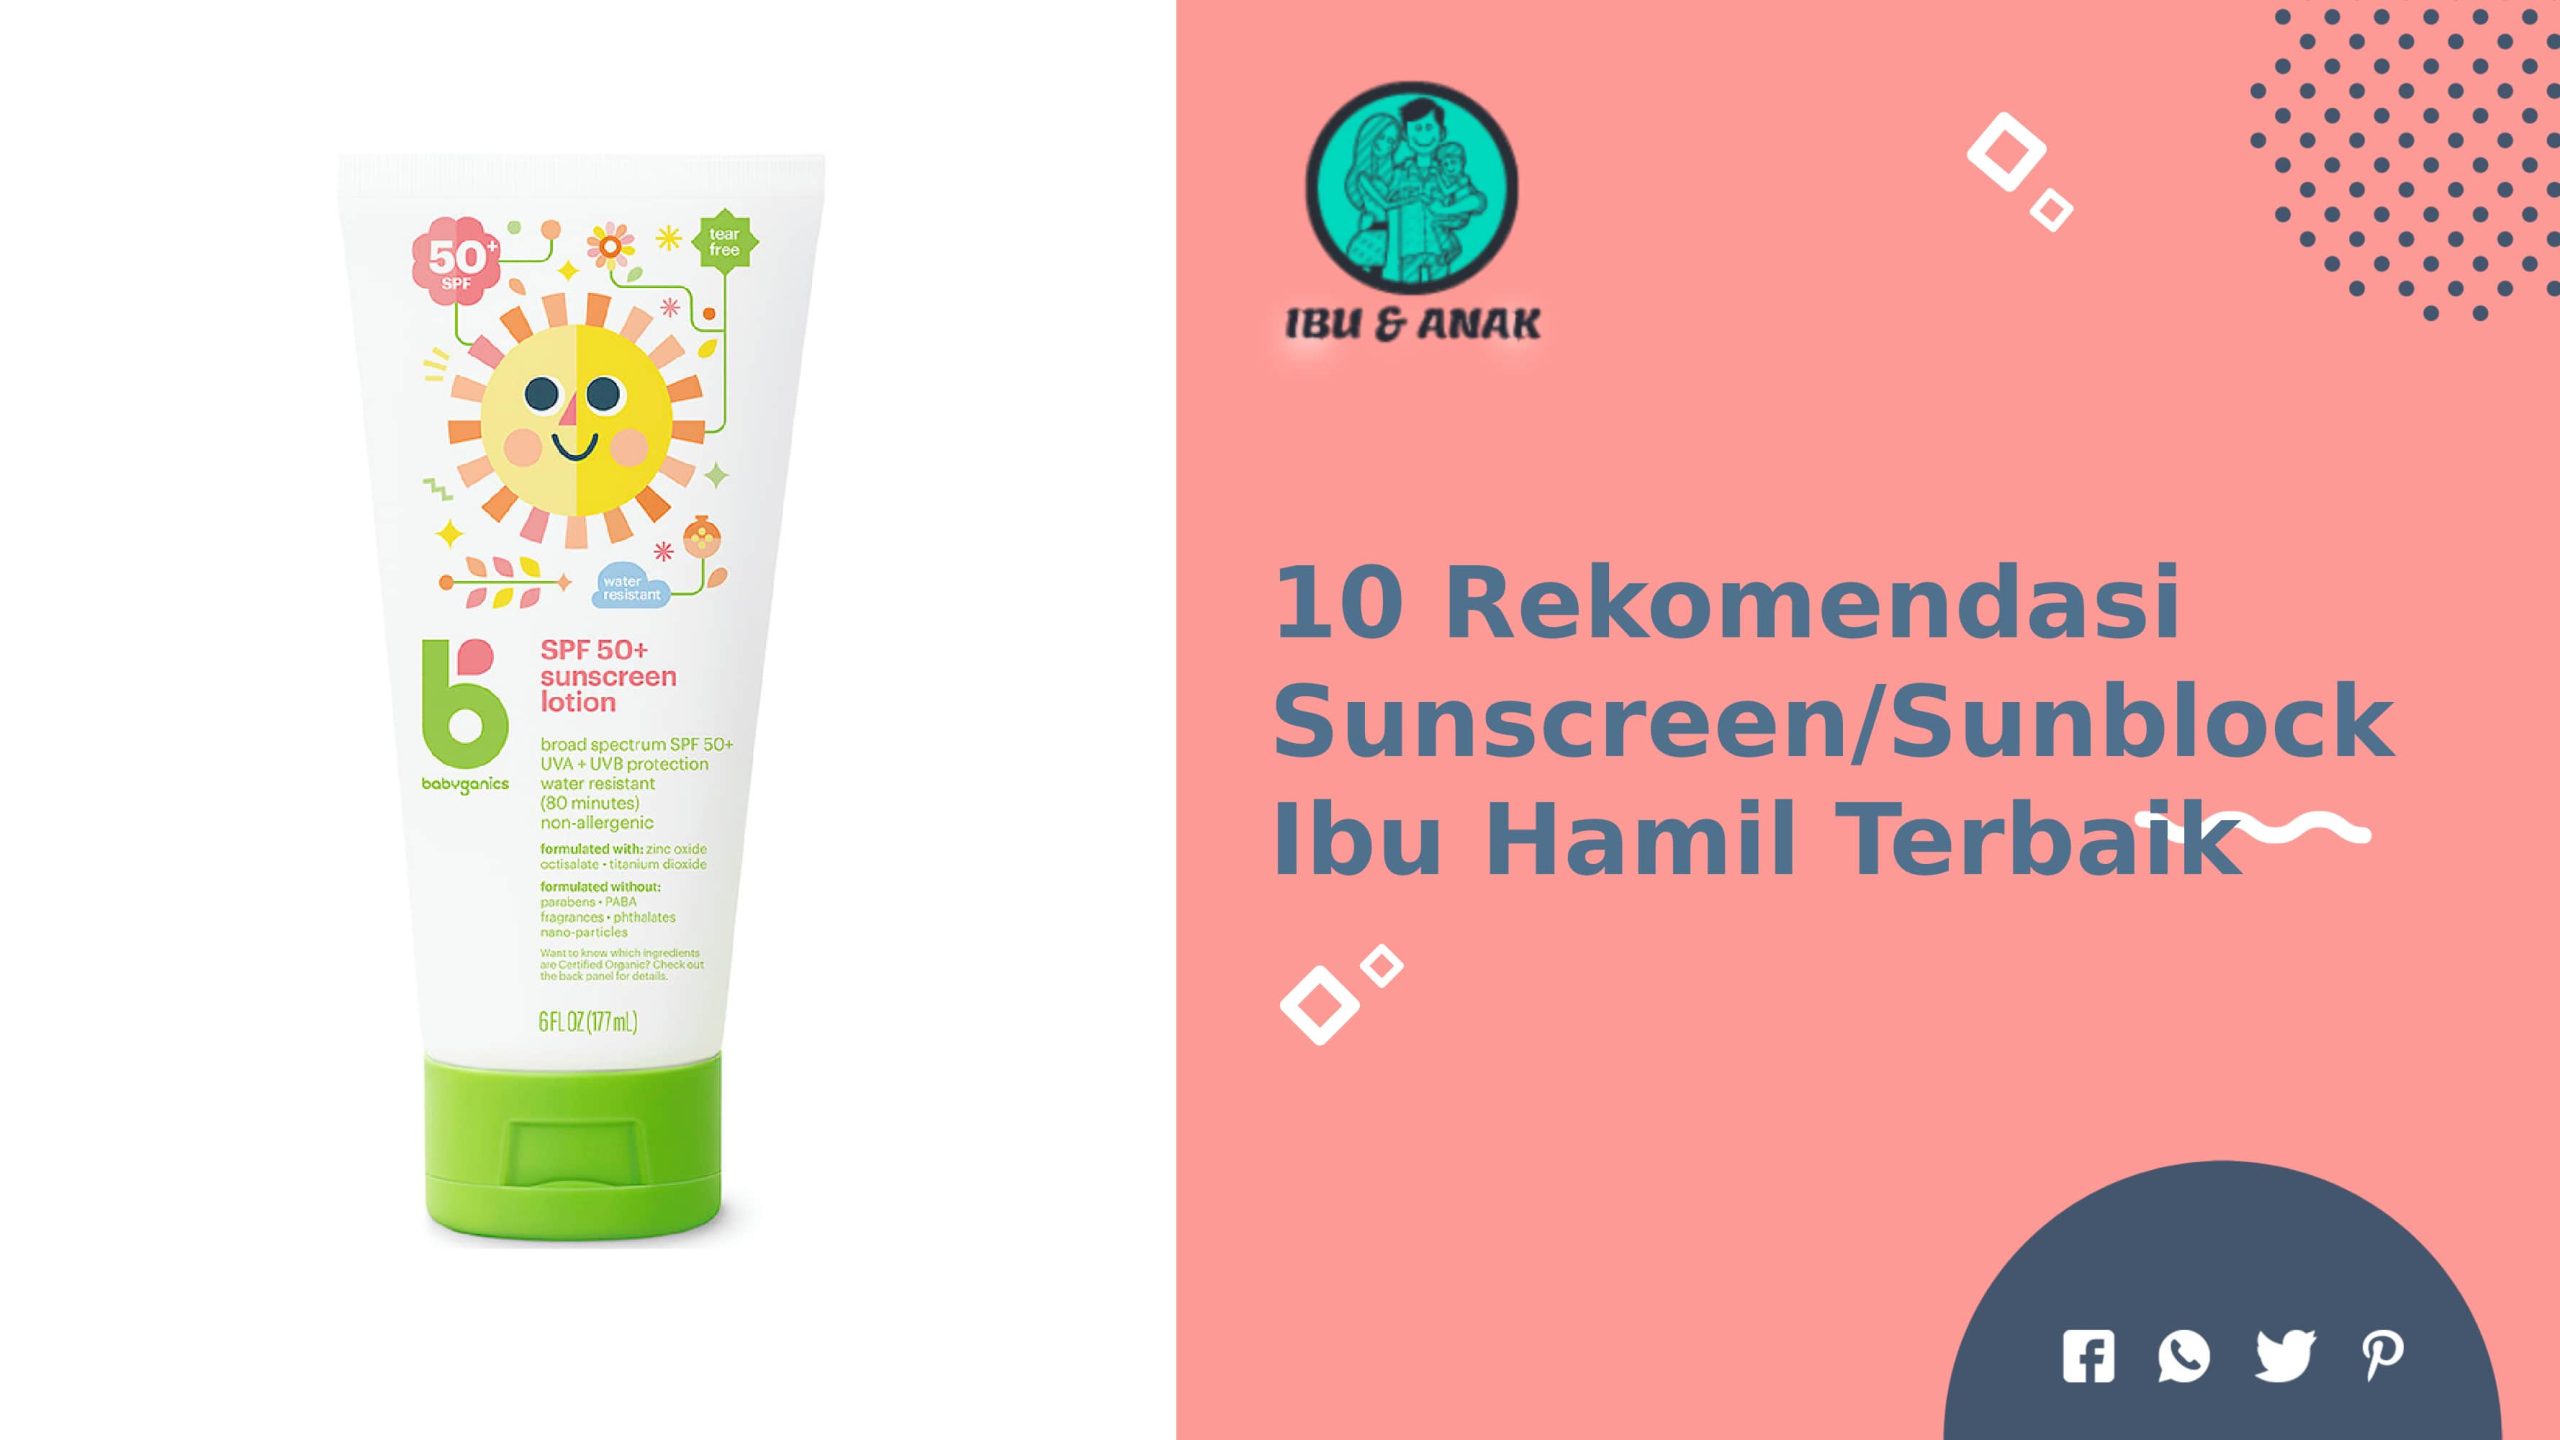 Sunscreen/Sunblock Terbaik untuk Ibu Hamil